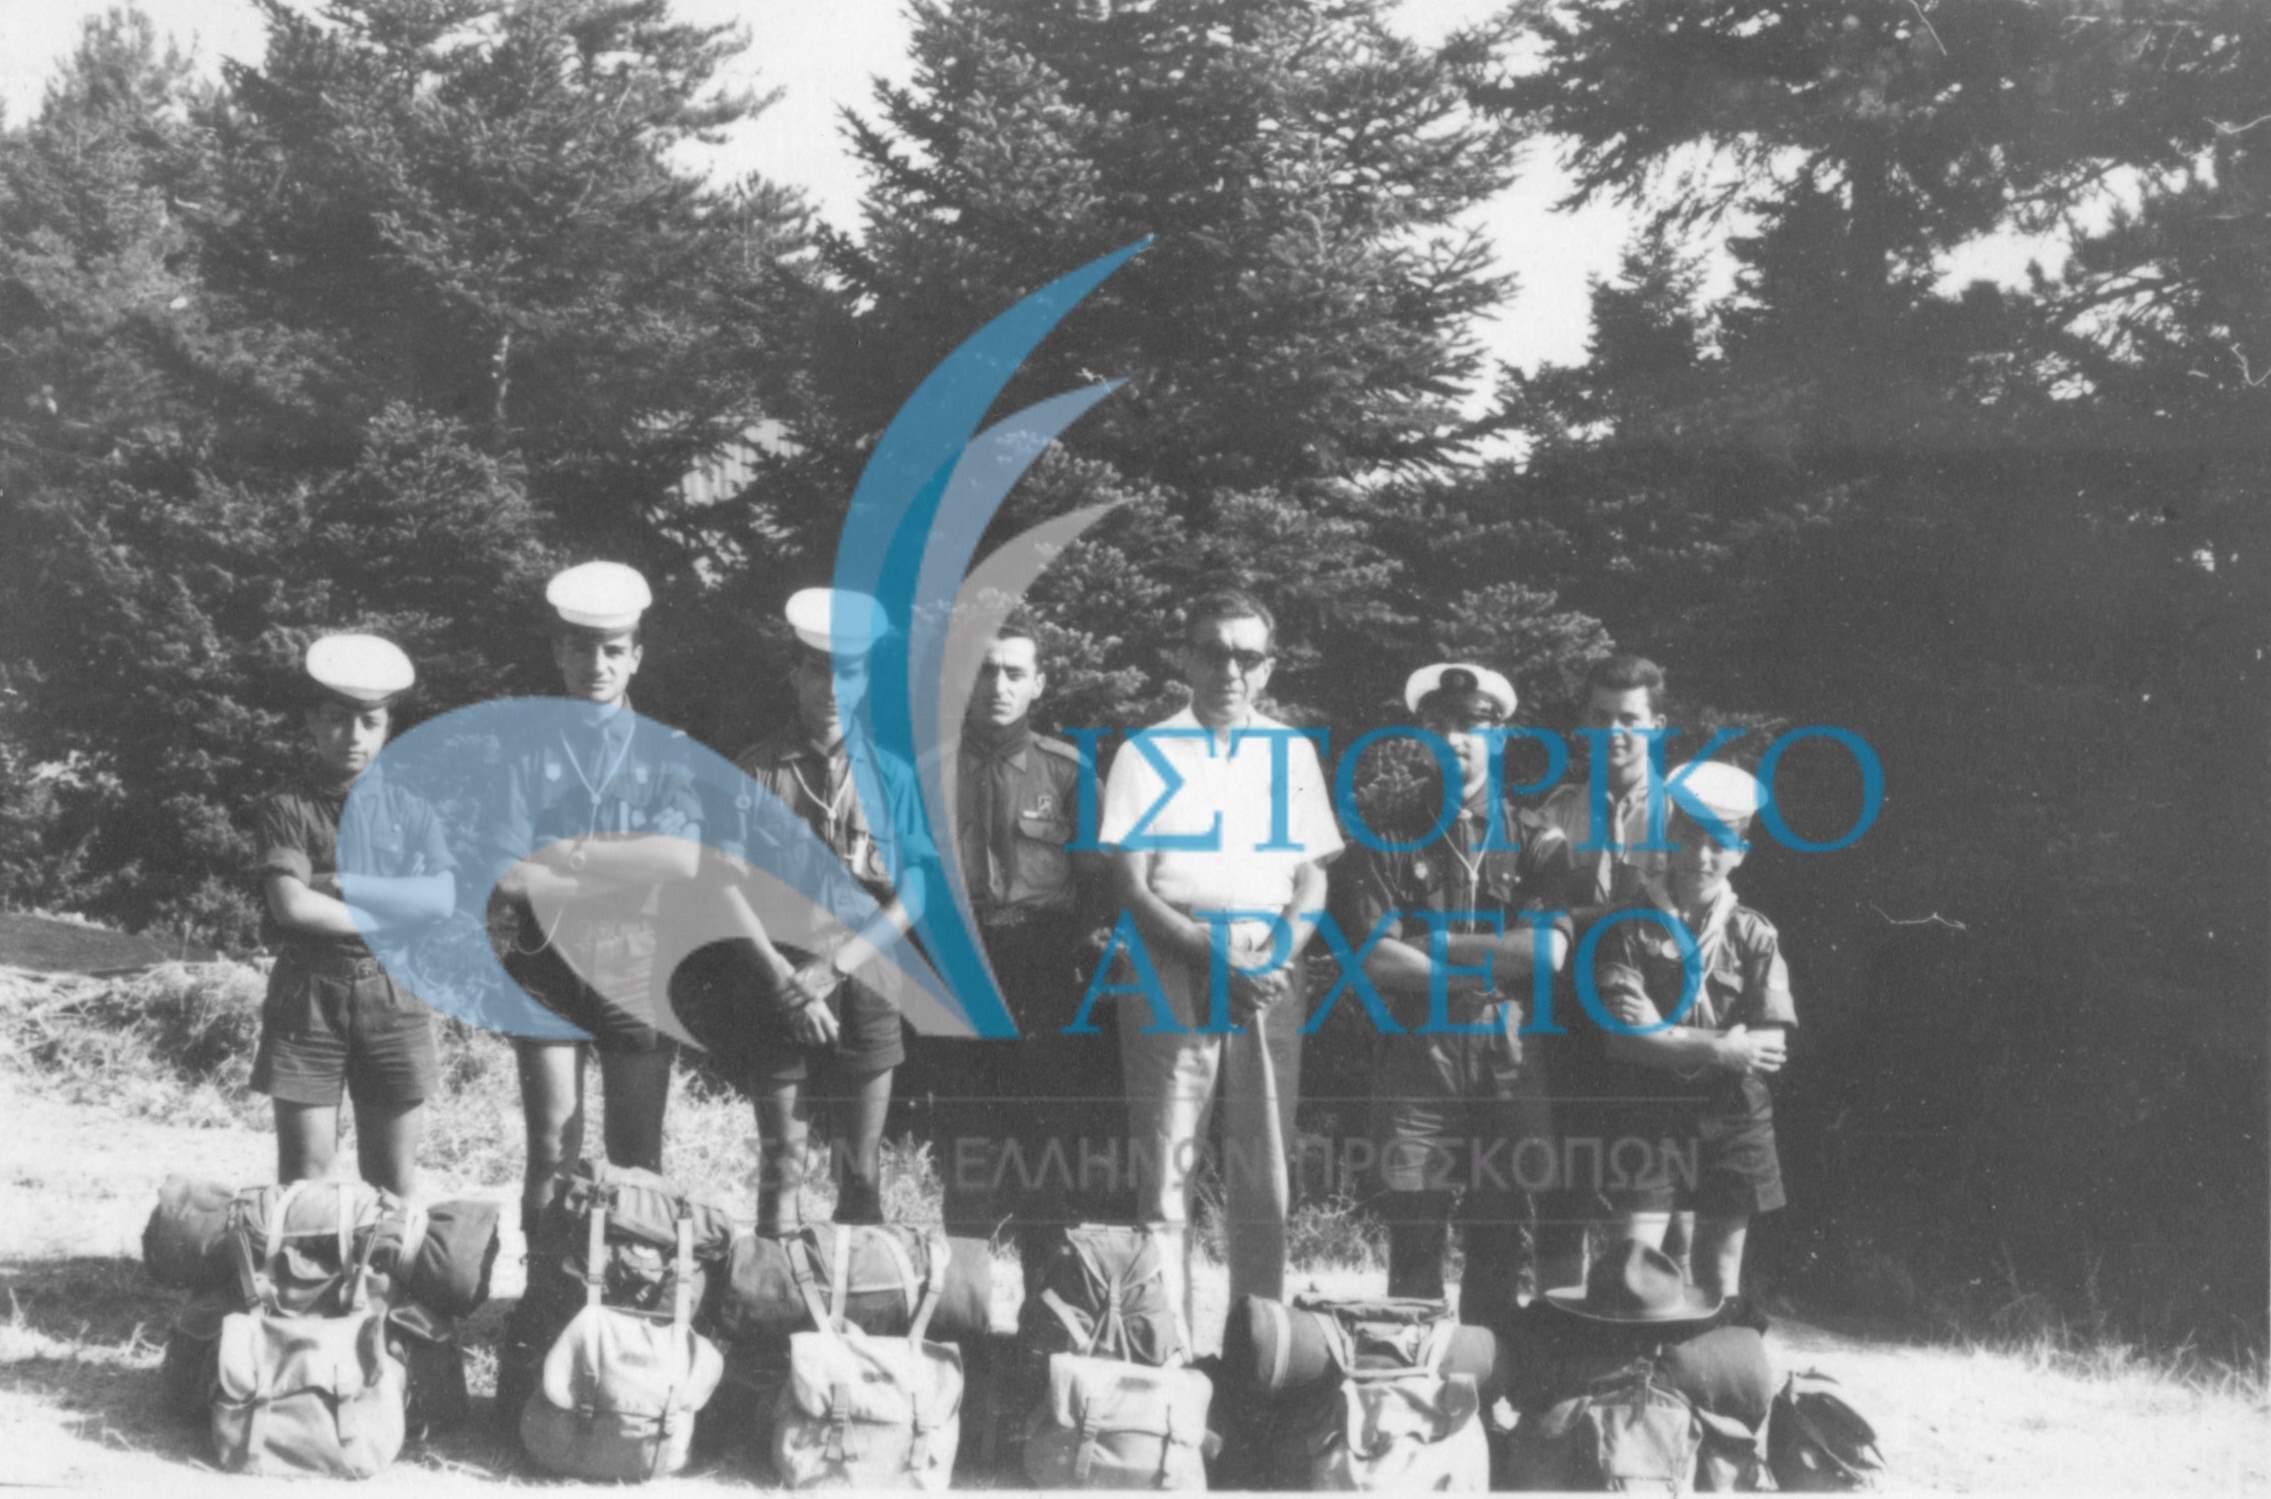 Πρόσκοποι του Λιβάνου με τα σακίδιά τους κατά τον ερχομό στην Αθήνα το 1960. Διακρίνονται οι (από αριστερά): Τάσος Ραφτόπουλος, Τάκης Ανδριώτης, Παύλος Αρμάος, Λεωνίδας Κάης, Γιώργος Παυλίδης, Κώστα Παπαιωάννου